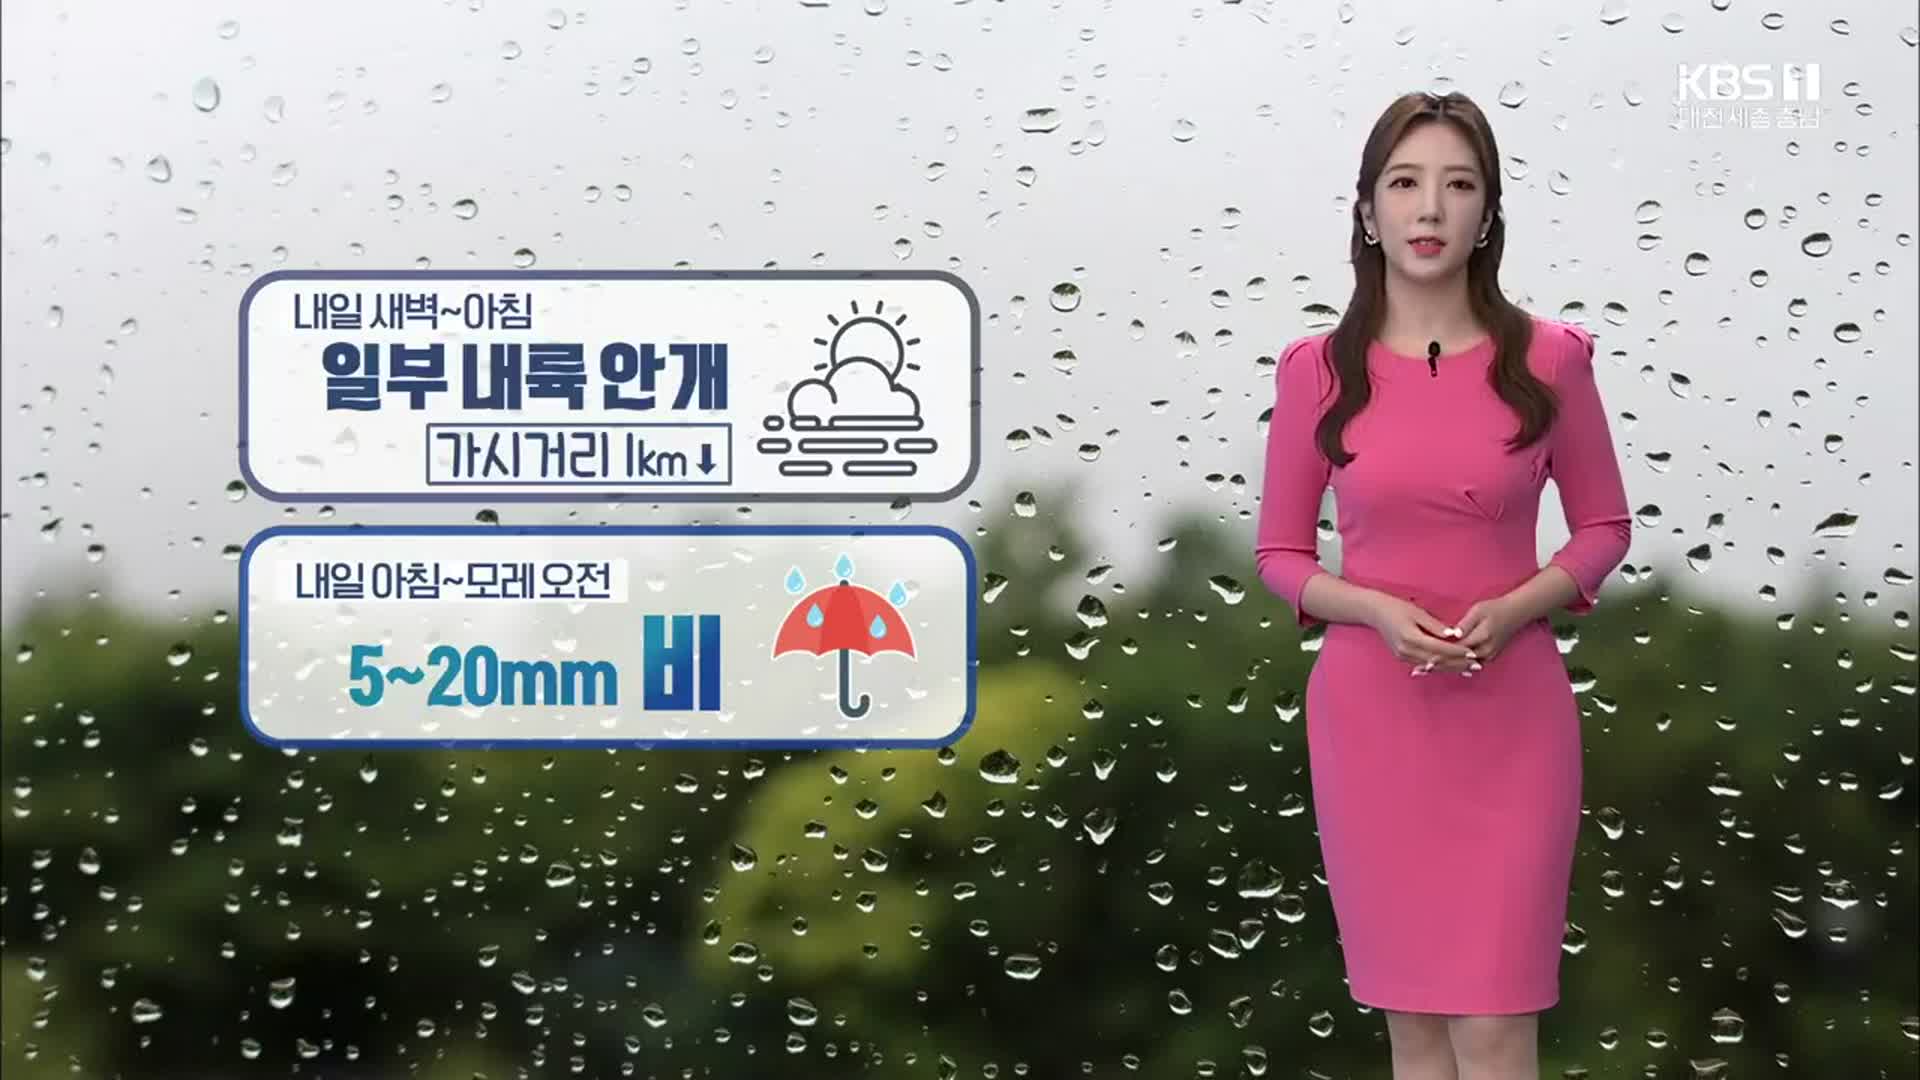 [날씨] 대전·세종·충남 내일 아침부터 5~20mm 비…일요일 첫 한파 가능성